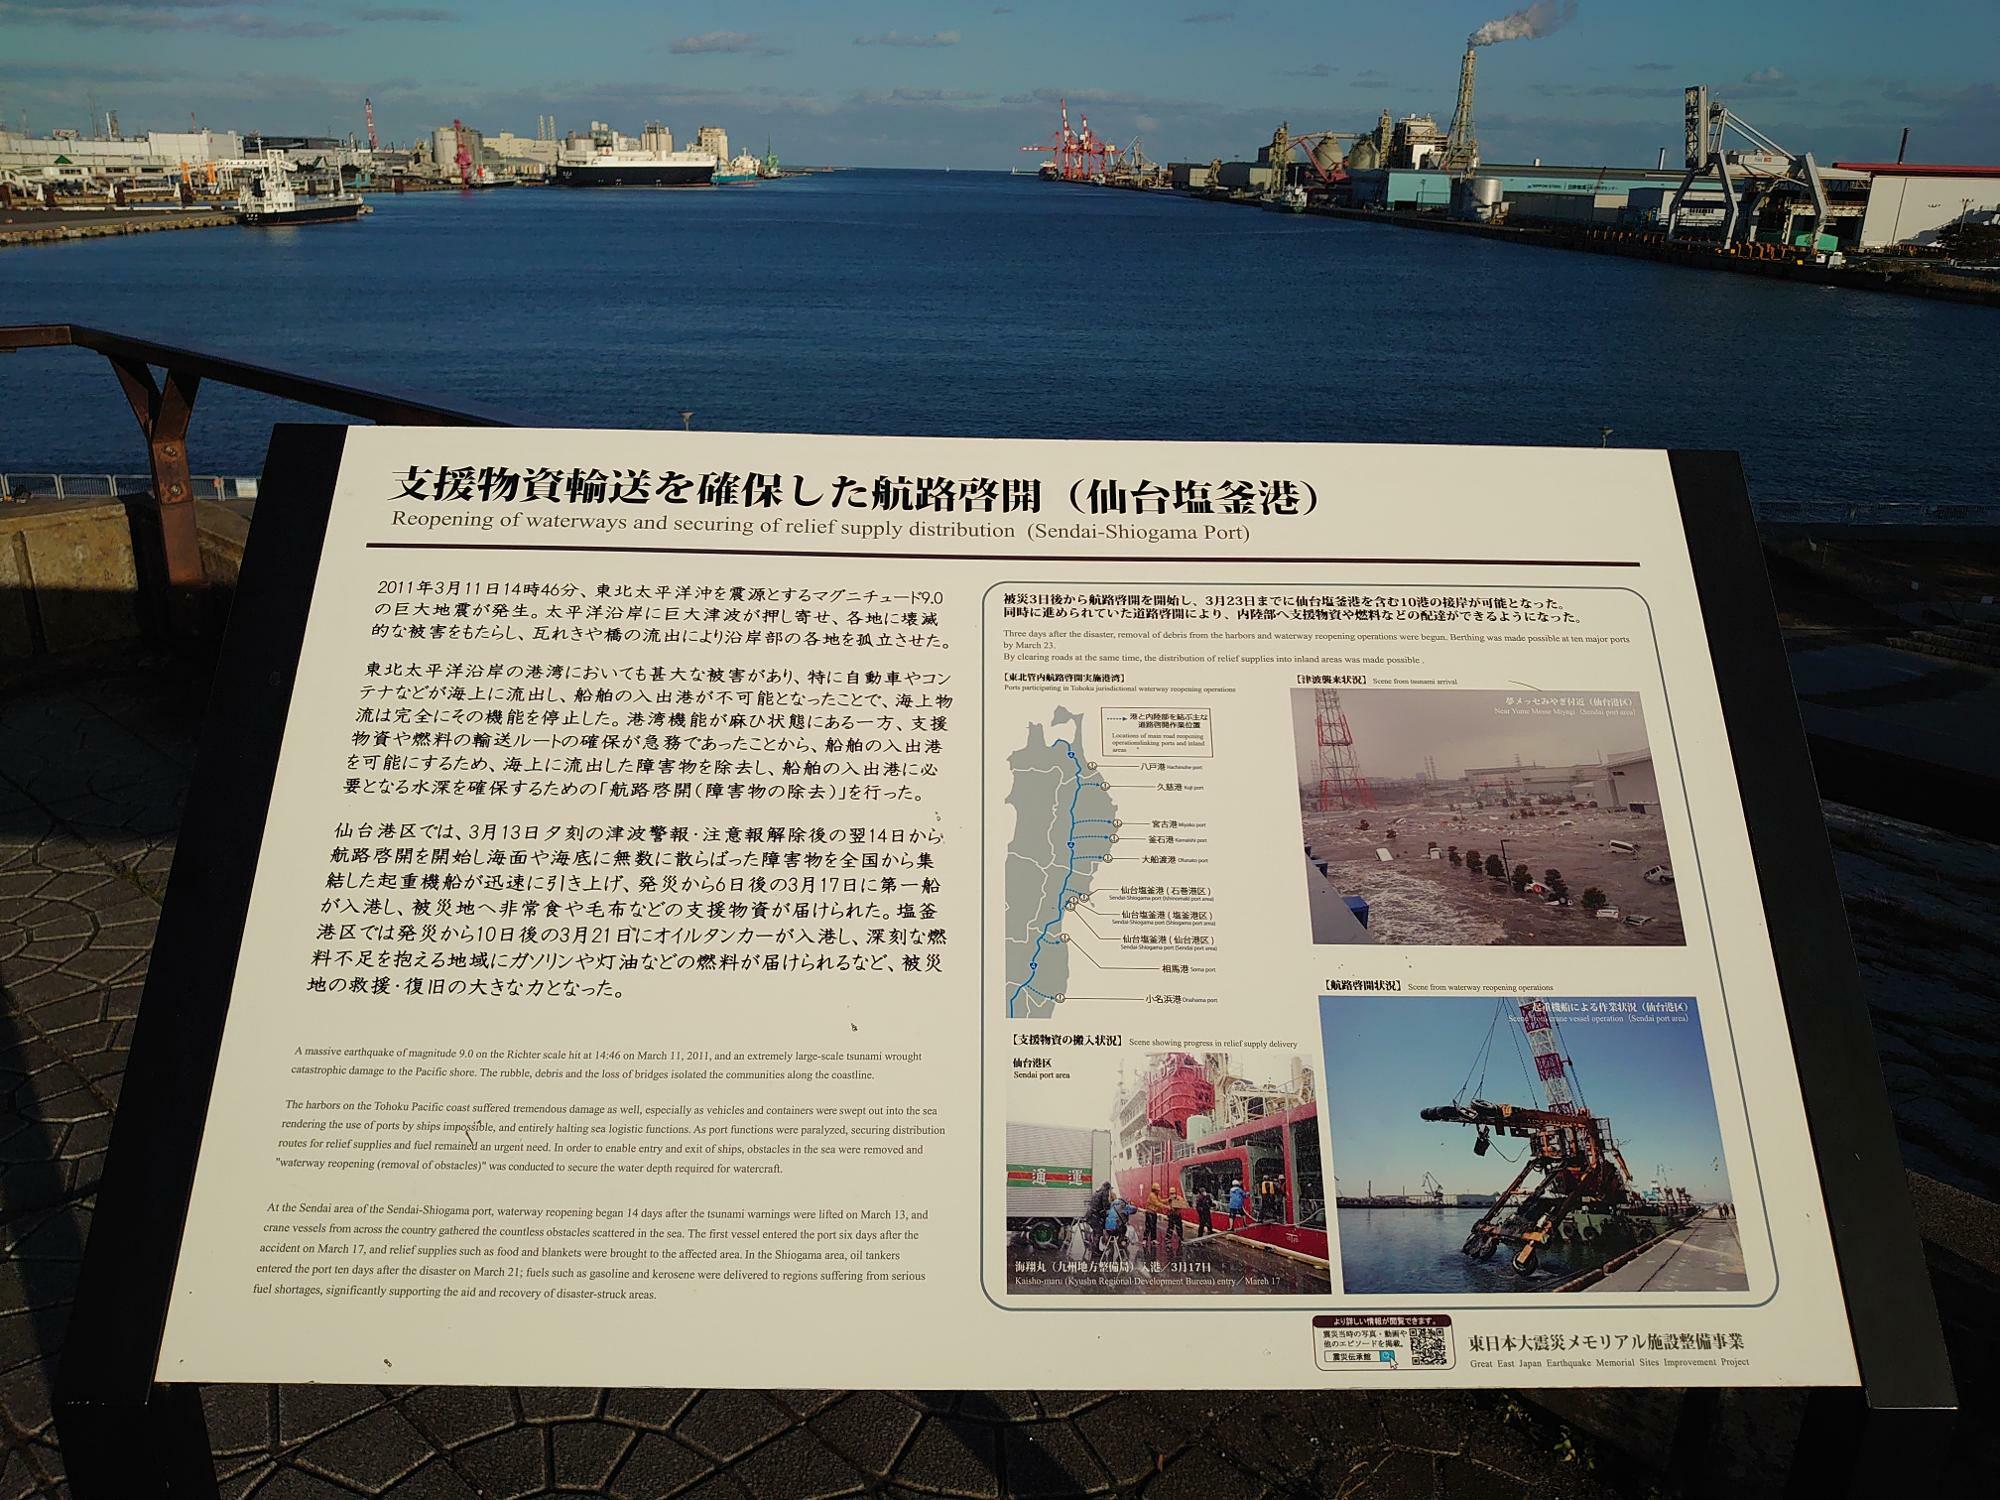 ちなみに、東日本大震災時の仙台港エリアの様子を伝える案内板もあります